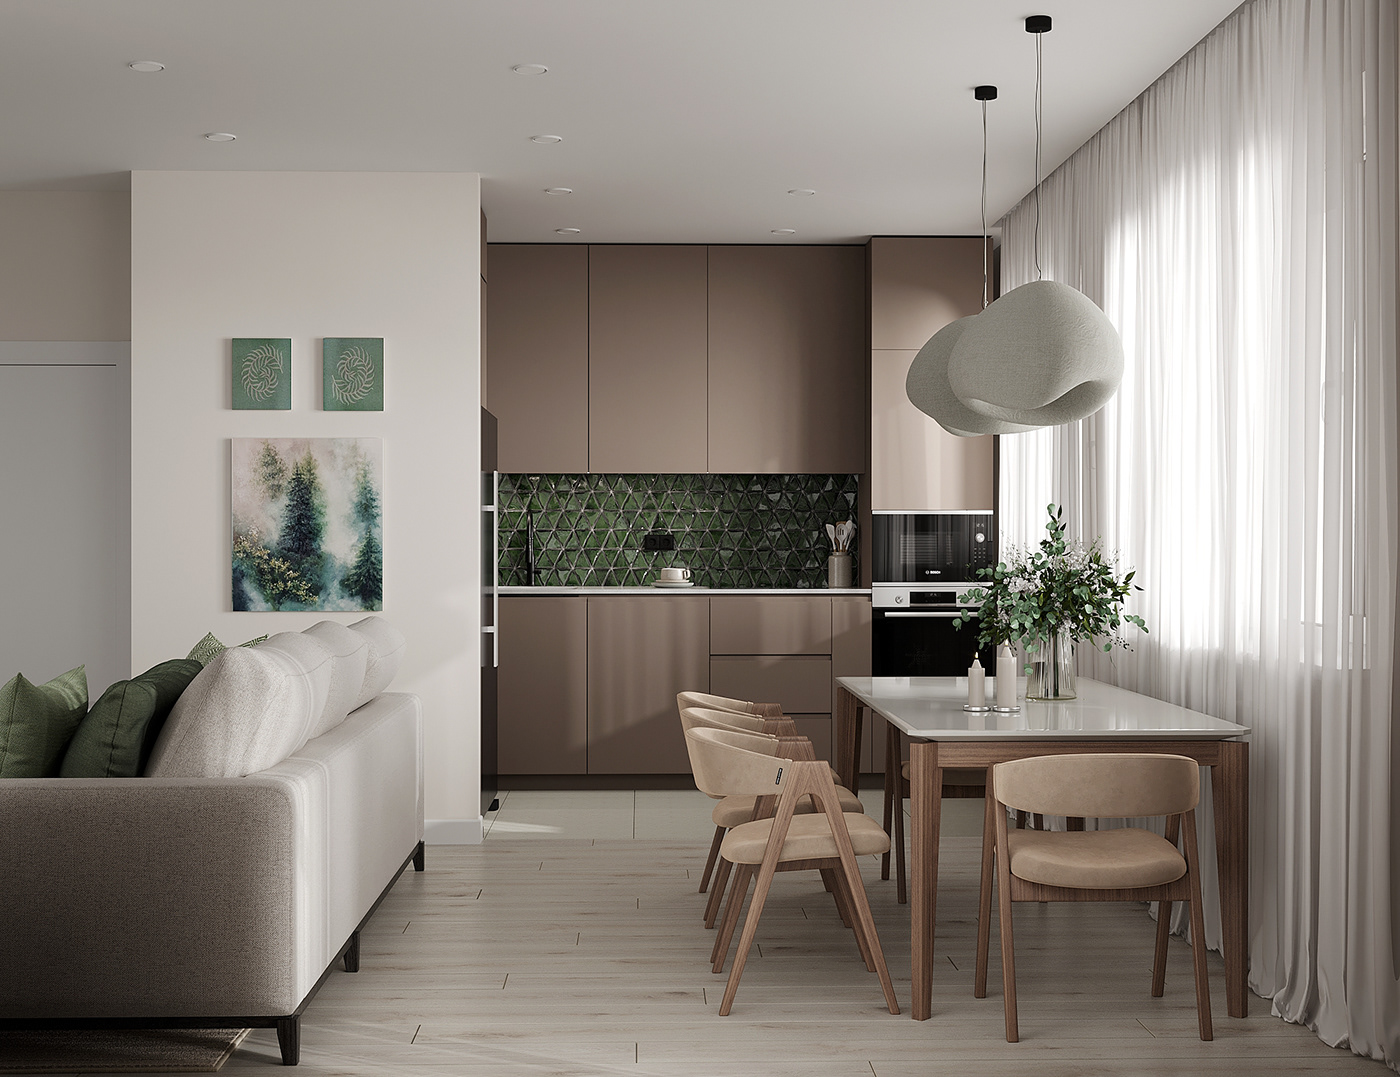 дизайн интерьера interior design  living room kitchen visualization кухня гостиная   Визуализация интерьера кухня-гостиная современный дизайн